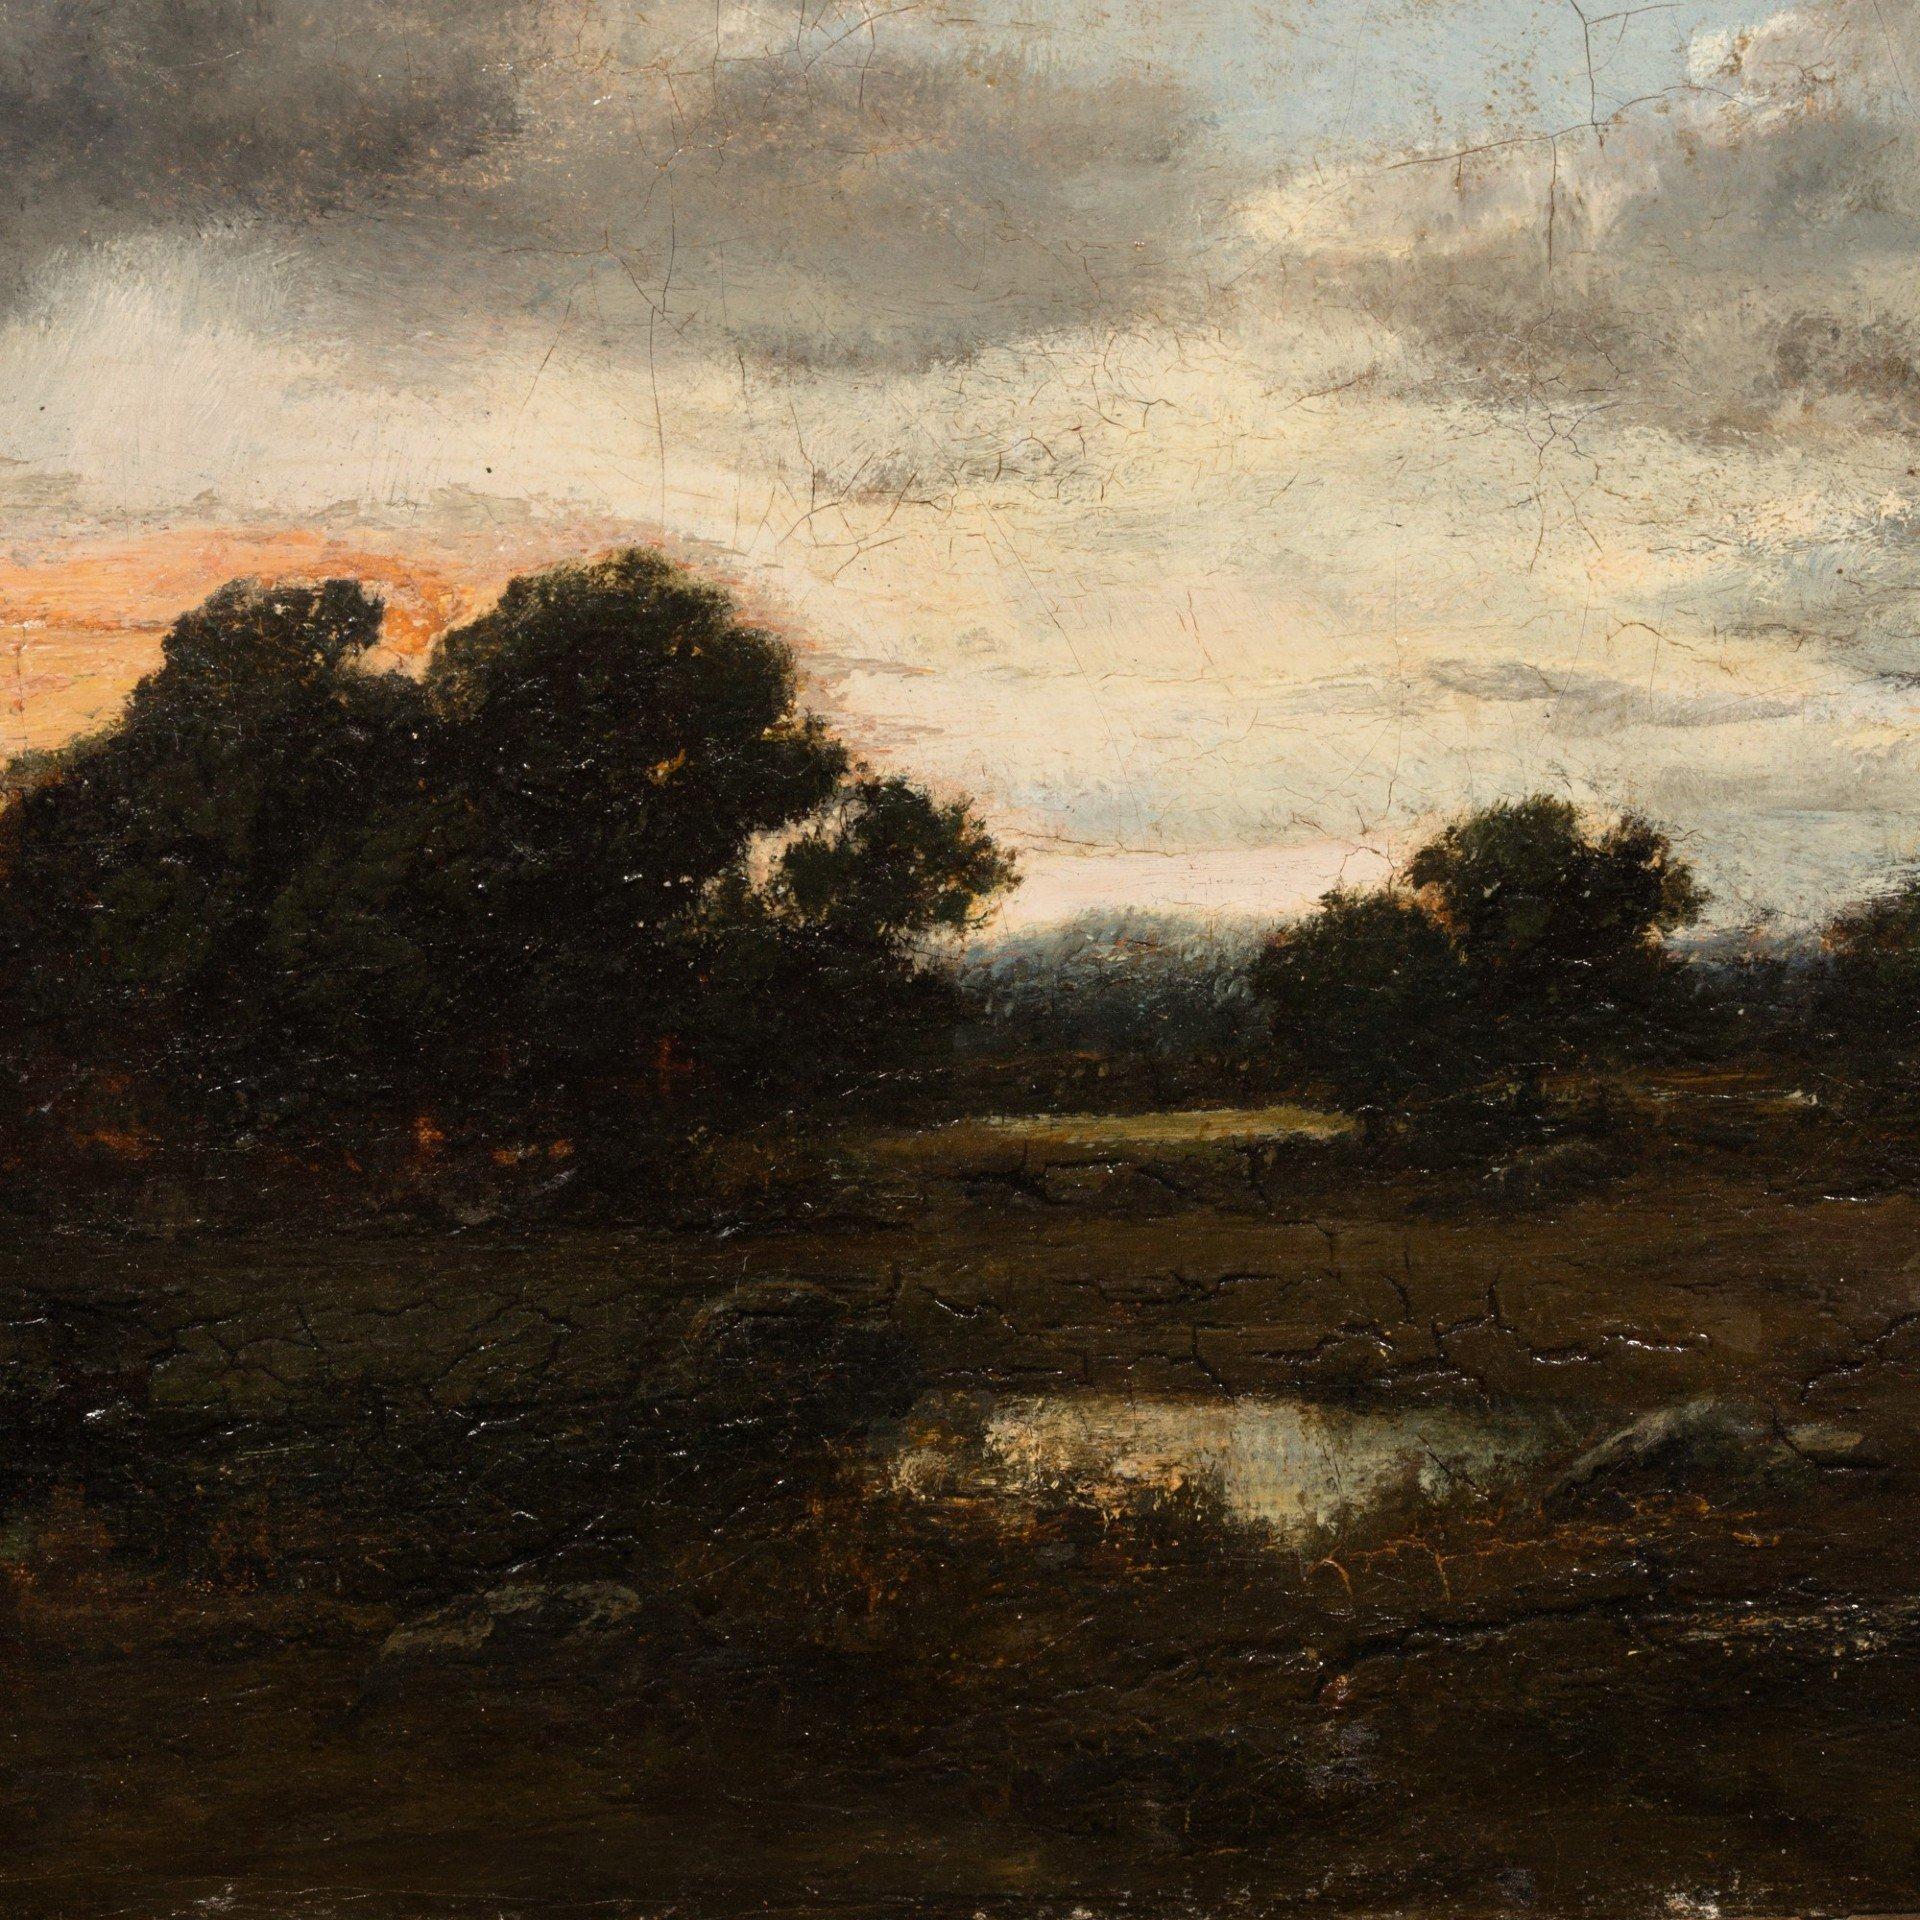 Narcisse Virgilio Díaz de la Peña Landscape Painting - Twilight, oil on canvas by Narcisse-Virgile Diaz de la Pena (1807 - 1876)